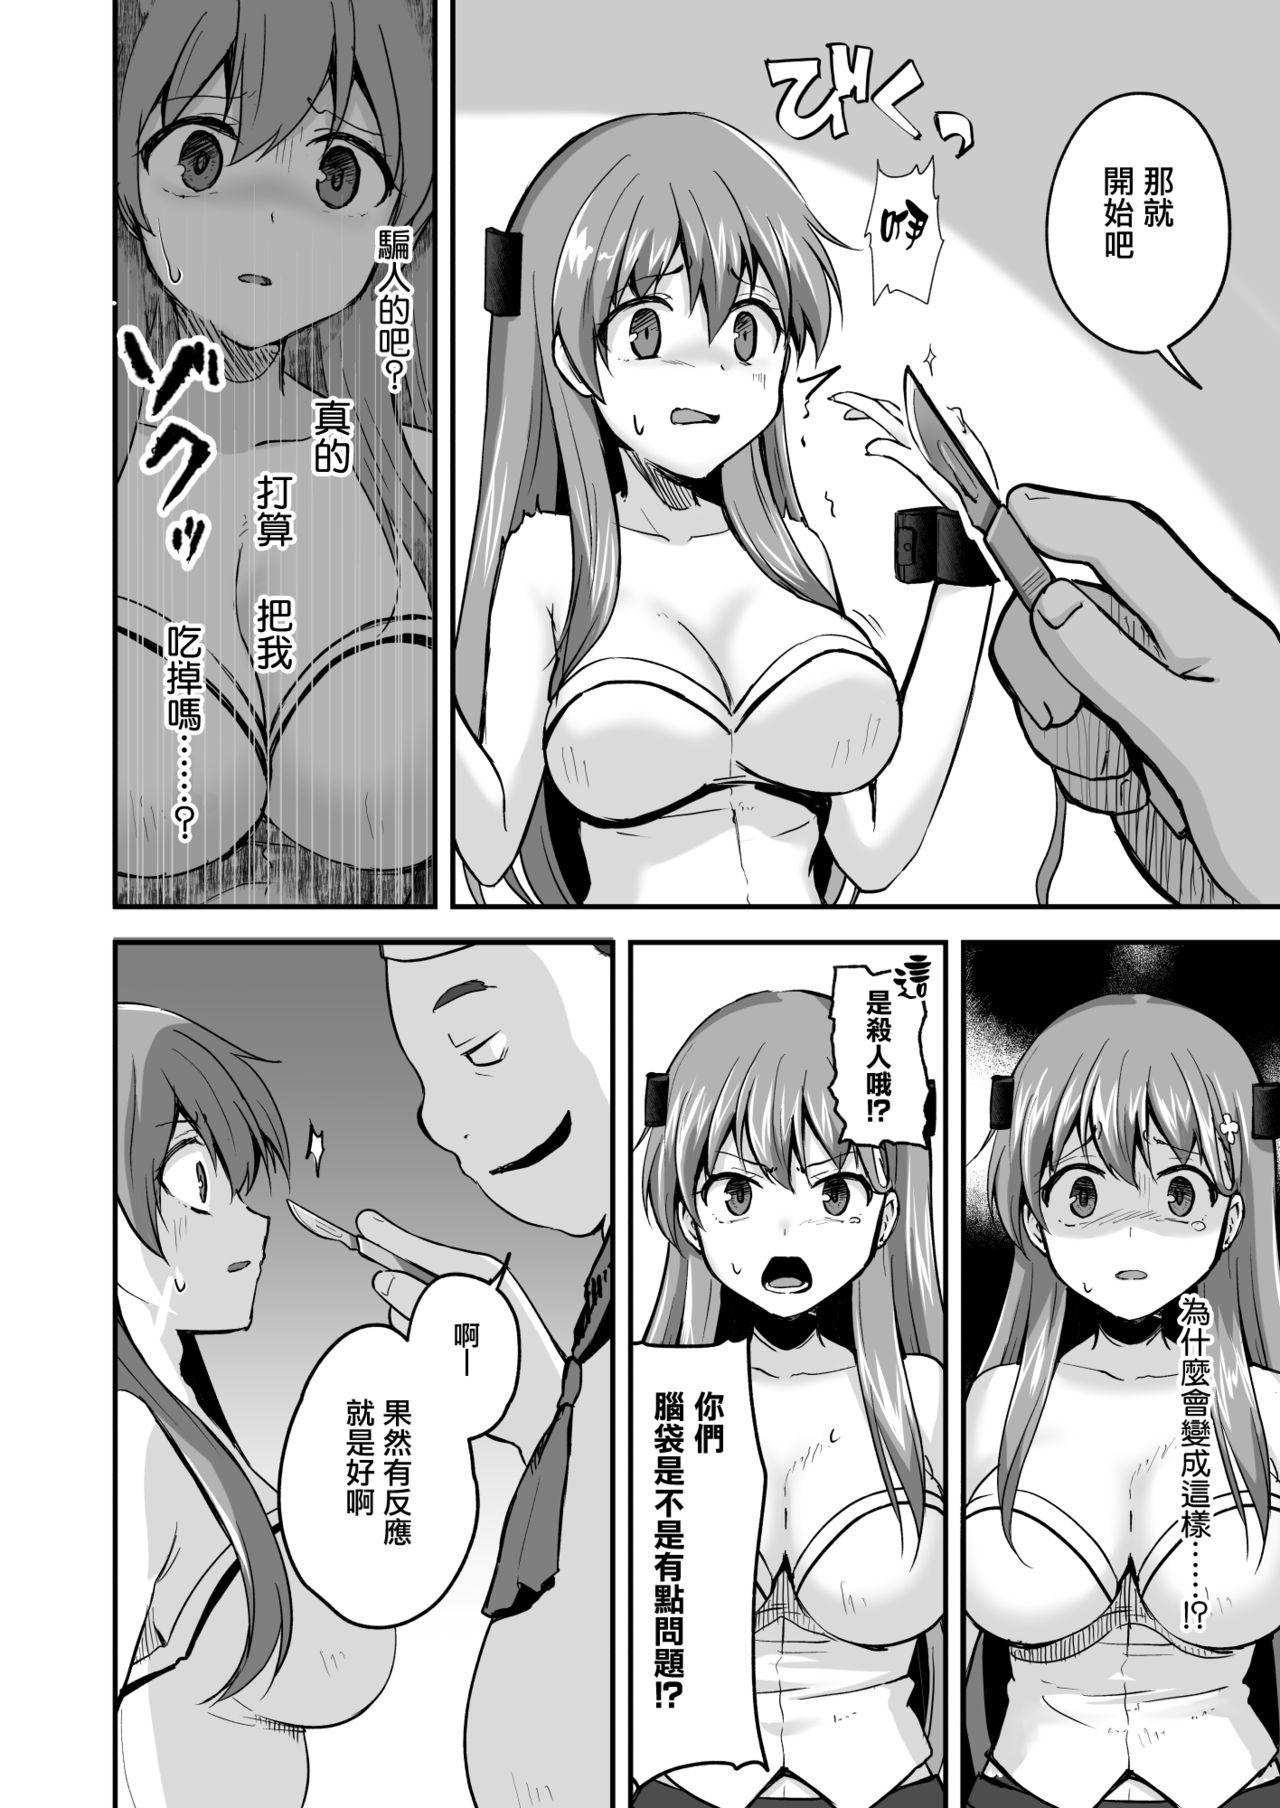 Prima Owari no Guuzou Kowasareru Watashi no Me, Mune, Ransou, Noumiso, Inochi. - Original Monster Cock - Page 13